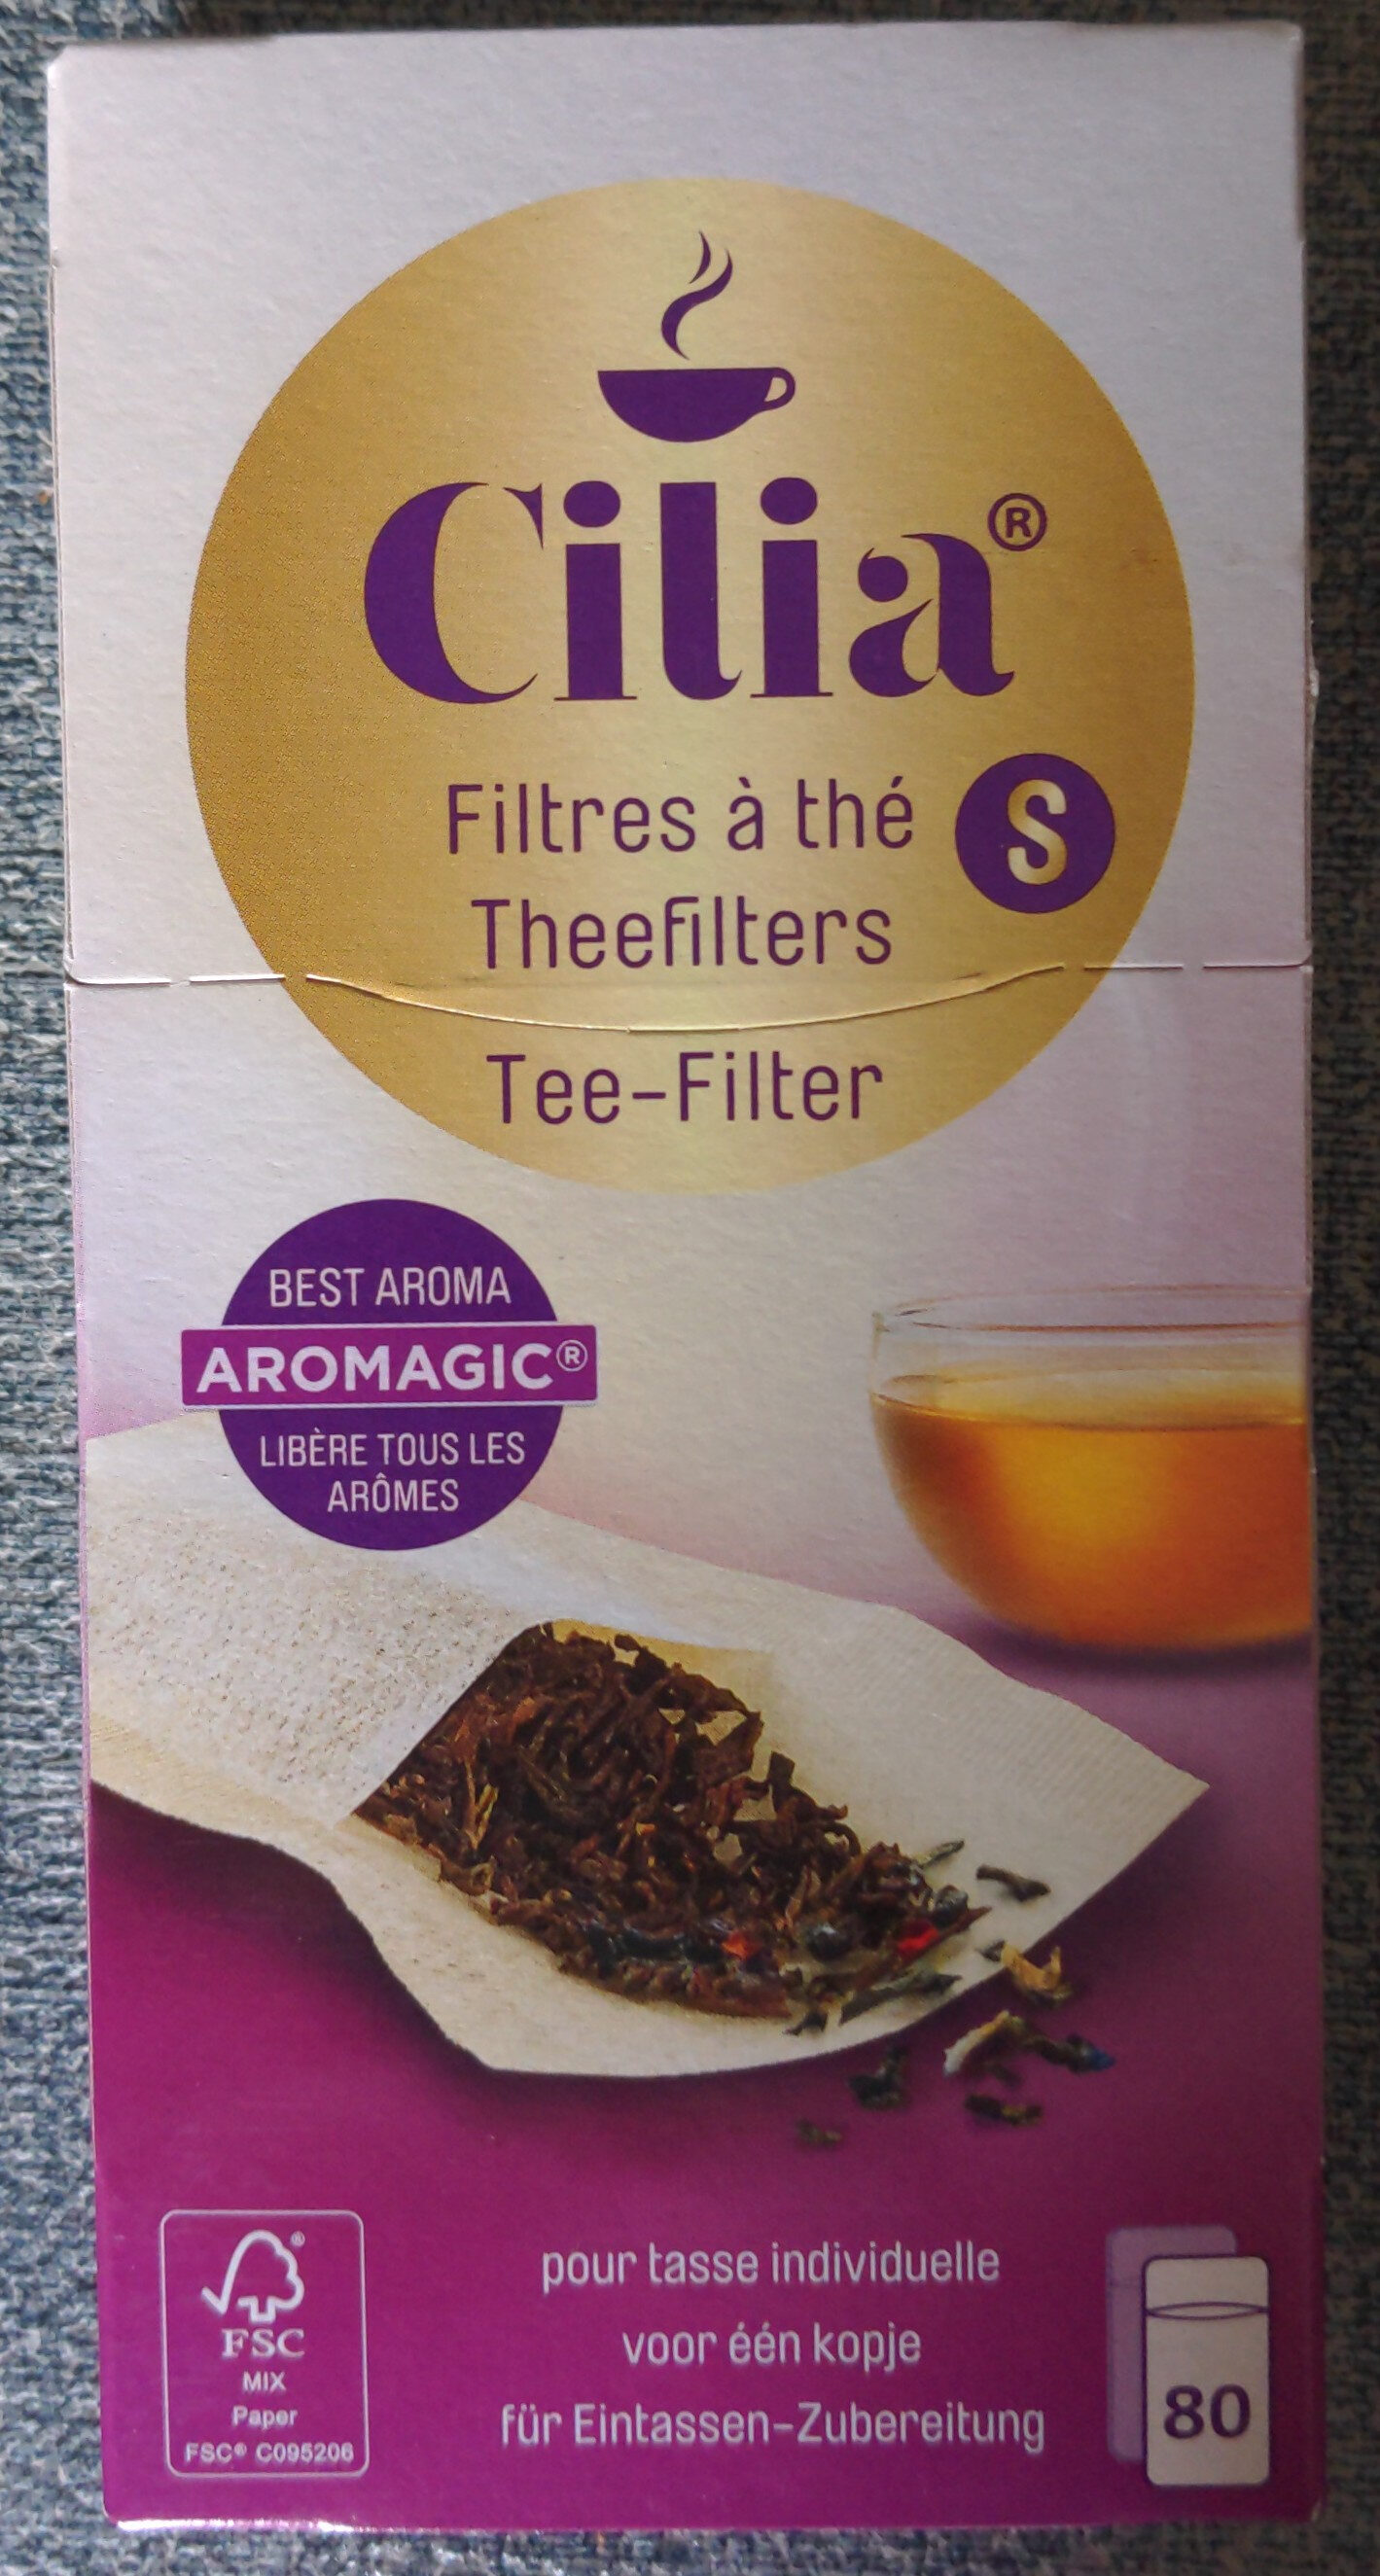 Filtre à thé S - Product - fr